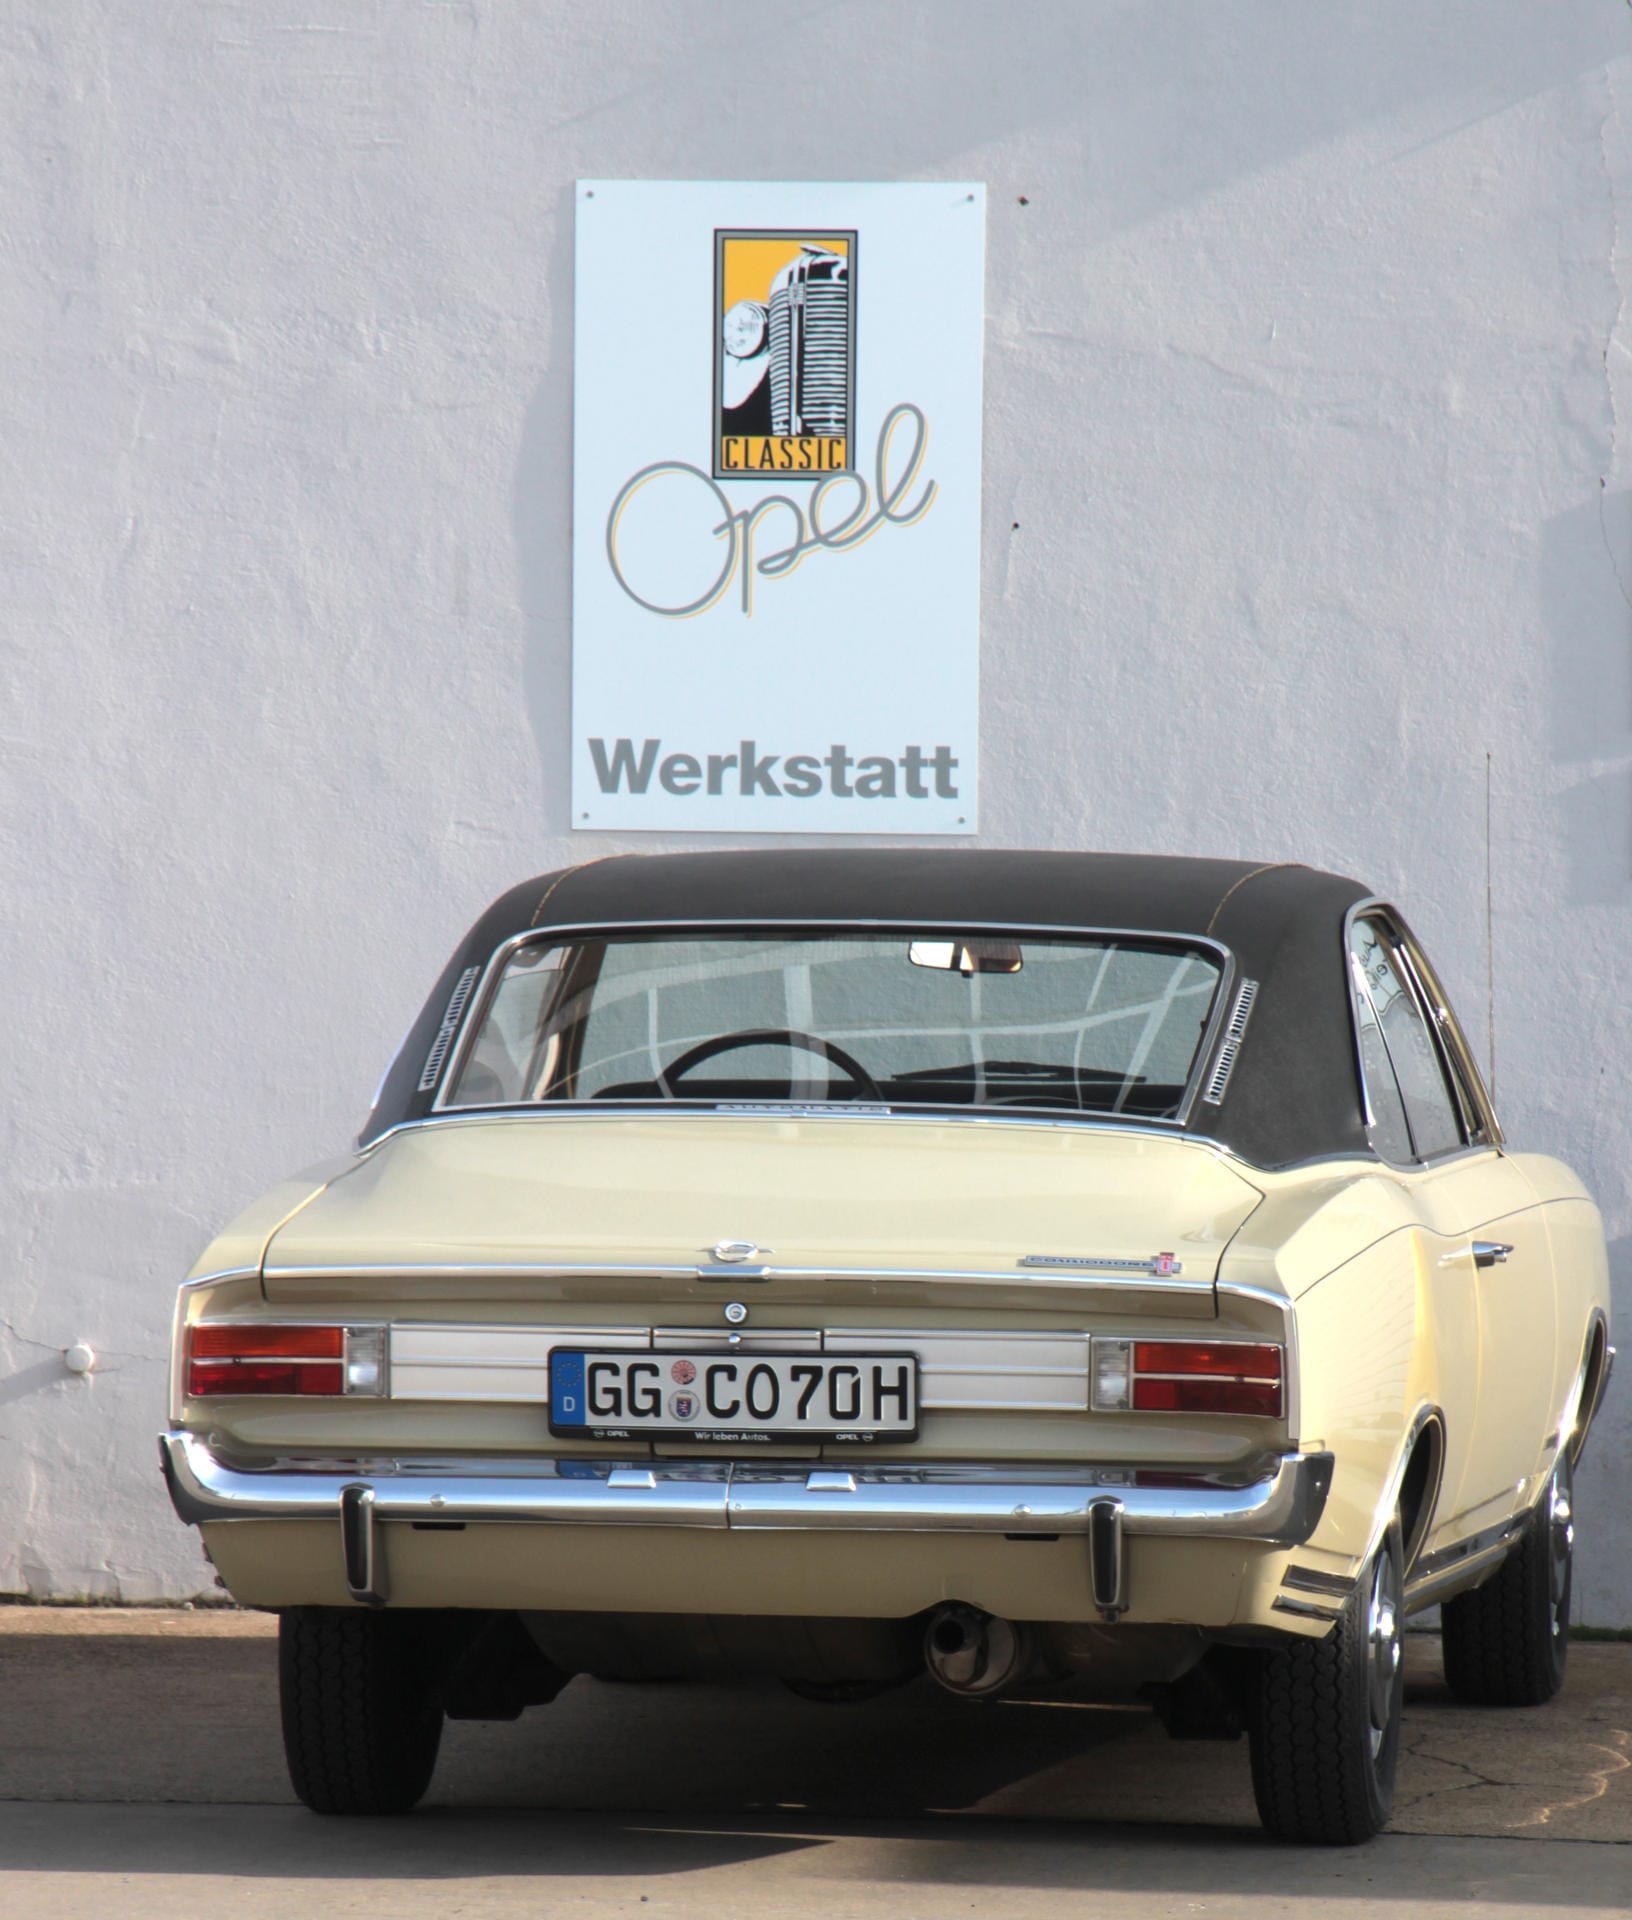 50 Jahre Opel Commodore: Zu Höherem berufen